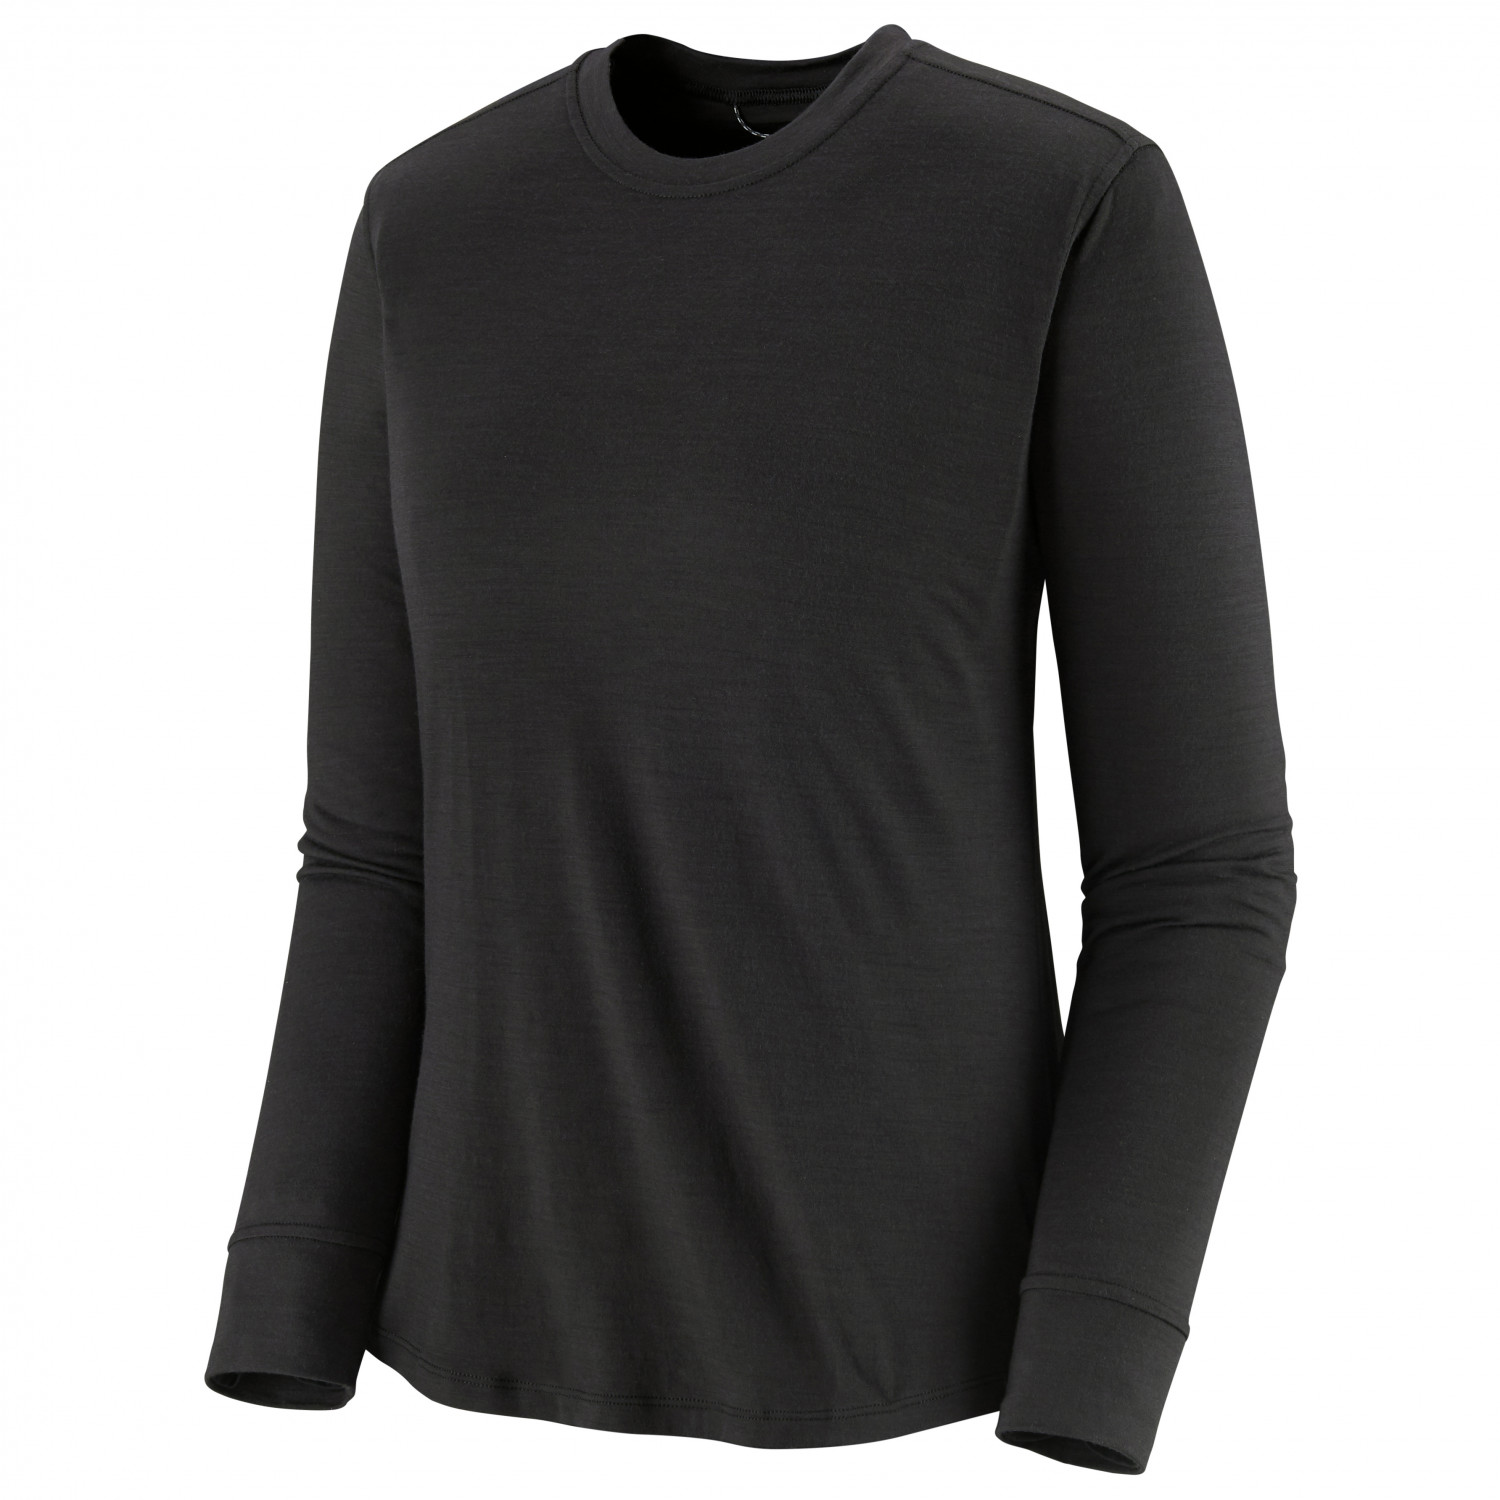 Рубашка из мериноса Patagonia Women's L/S Cap Cool Merino Shirt, черный